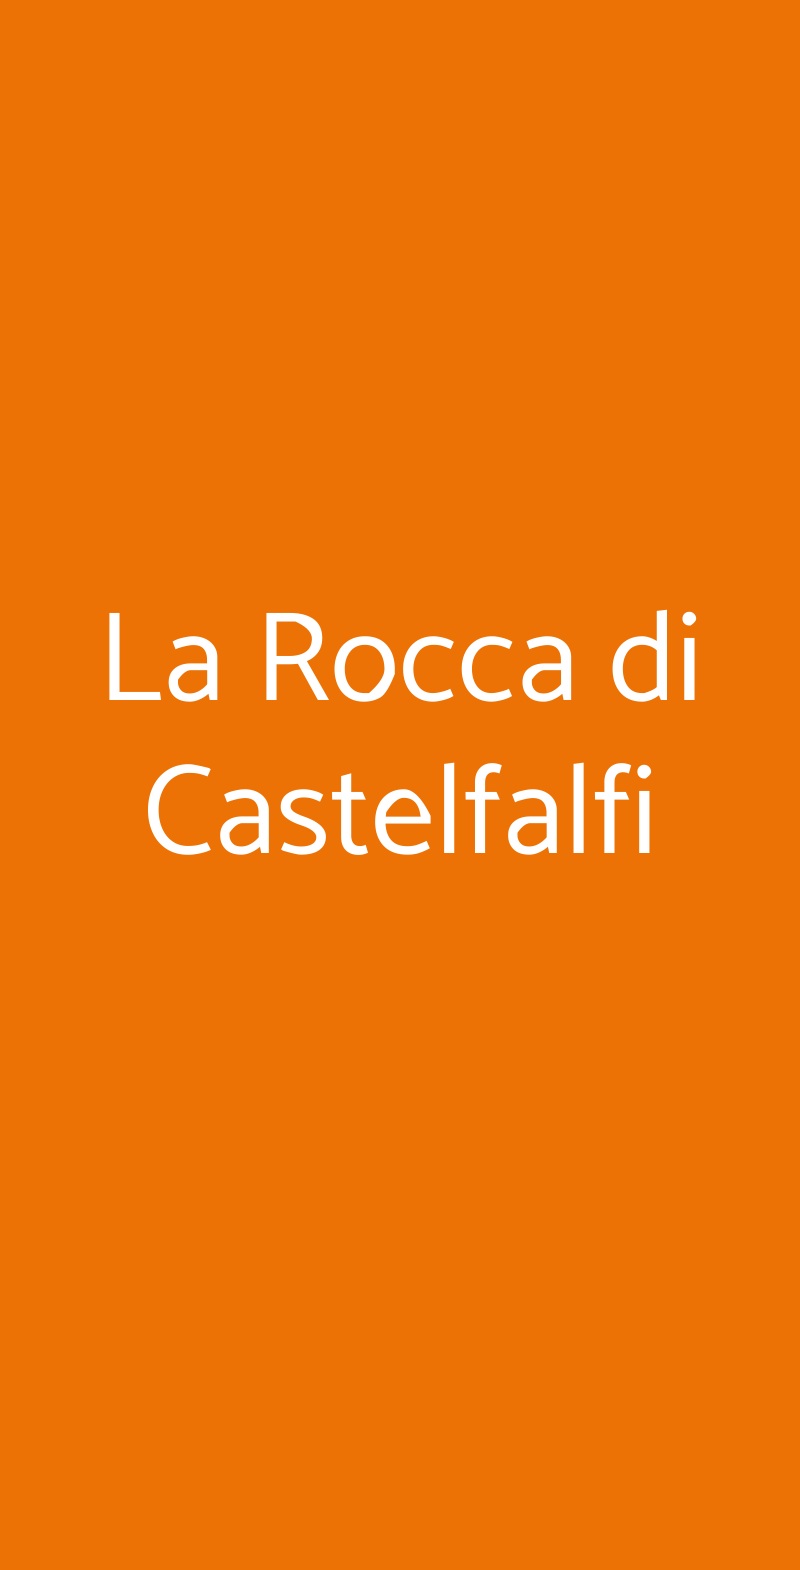 La Rocca di Castelfalfi Montaione menù 1 pagina